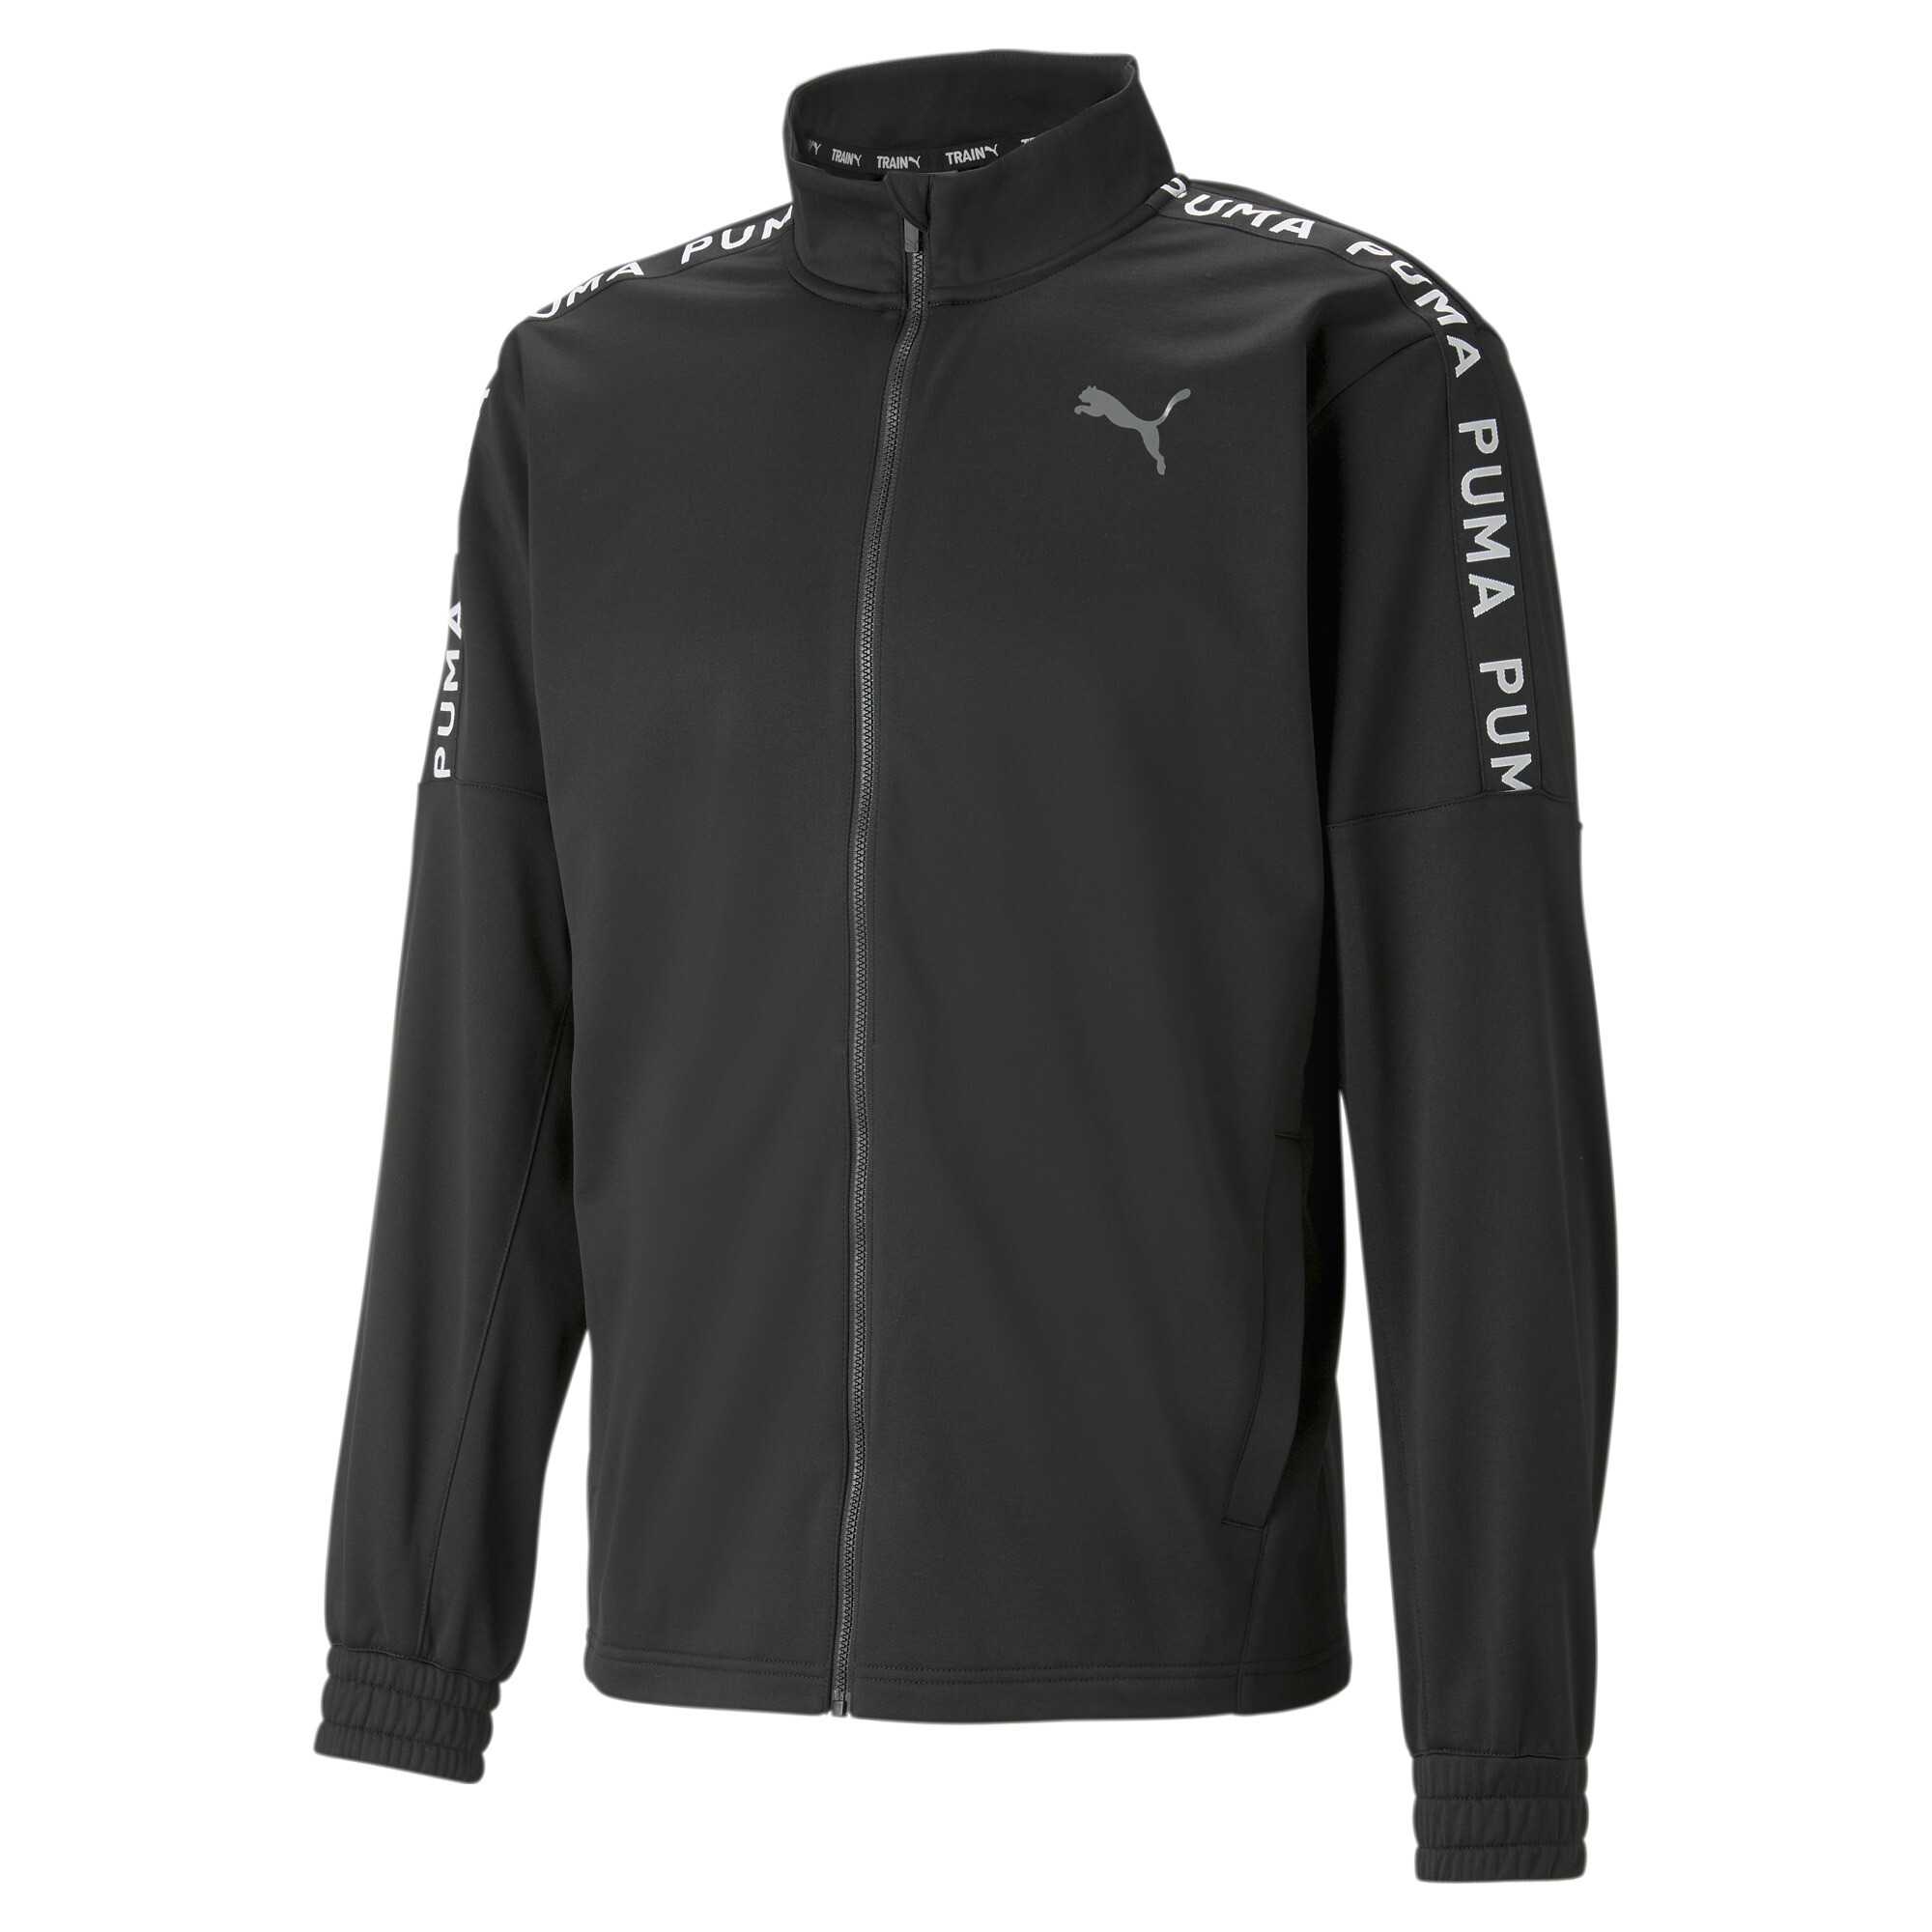 Men's PUMA Fit Light PWRFLEECE Full-Zip Training Jacket Men In Black, Size XS